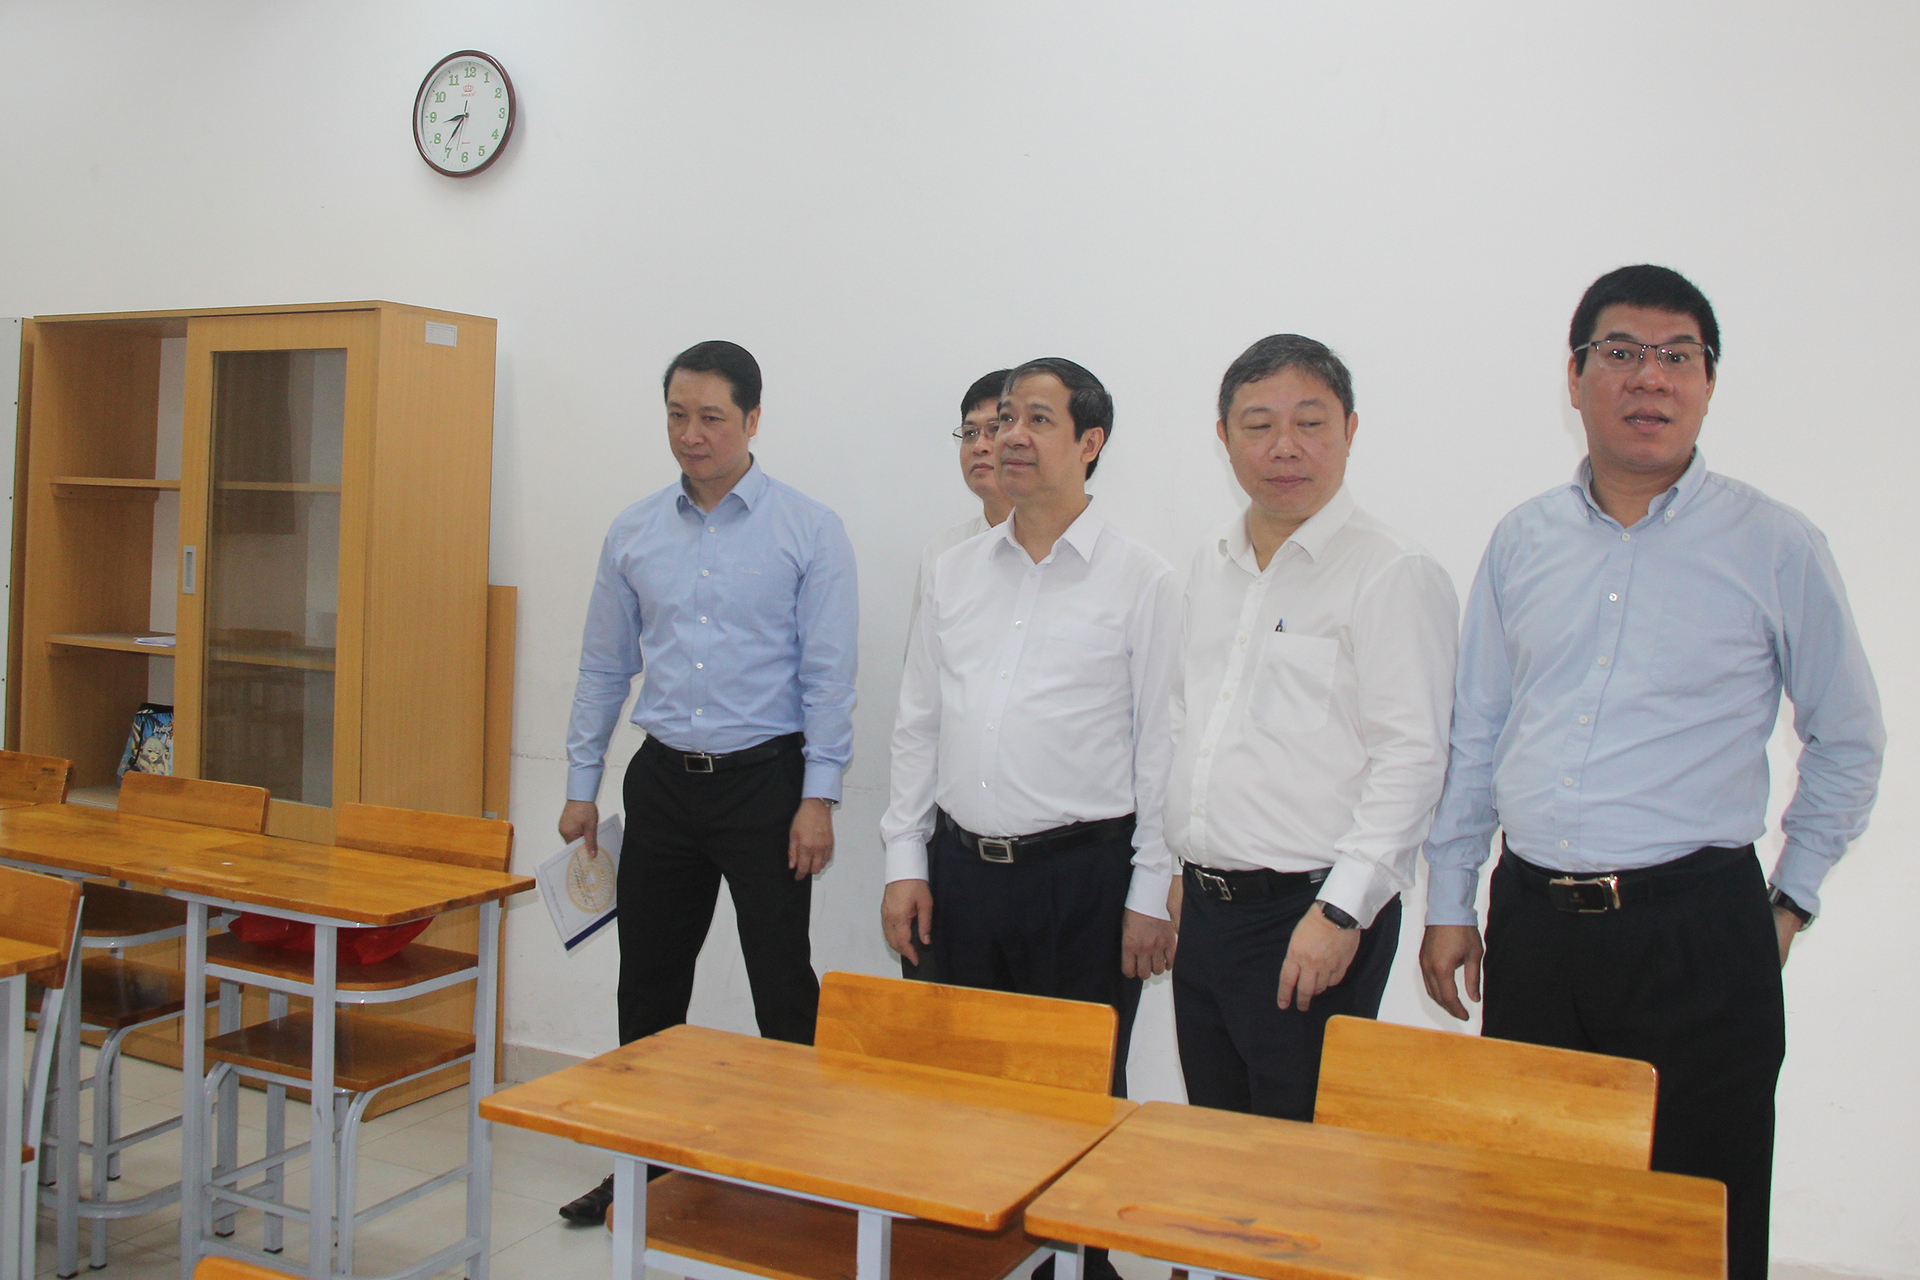 Bộ trưởng Nguyễn Kim Sơn và đoàn công tác, cùng Ban chỉ đạo thi TP.HCM đã đi thị sát một số điểm thi, điểm in sao đề thi của TP.HCM trước Kỳ thi tốt nghiệp THPT 2023. Ảnh: H.P.